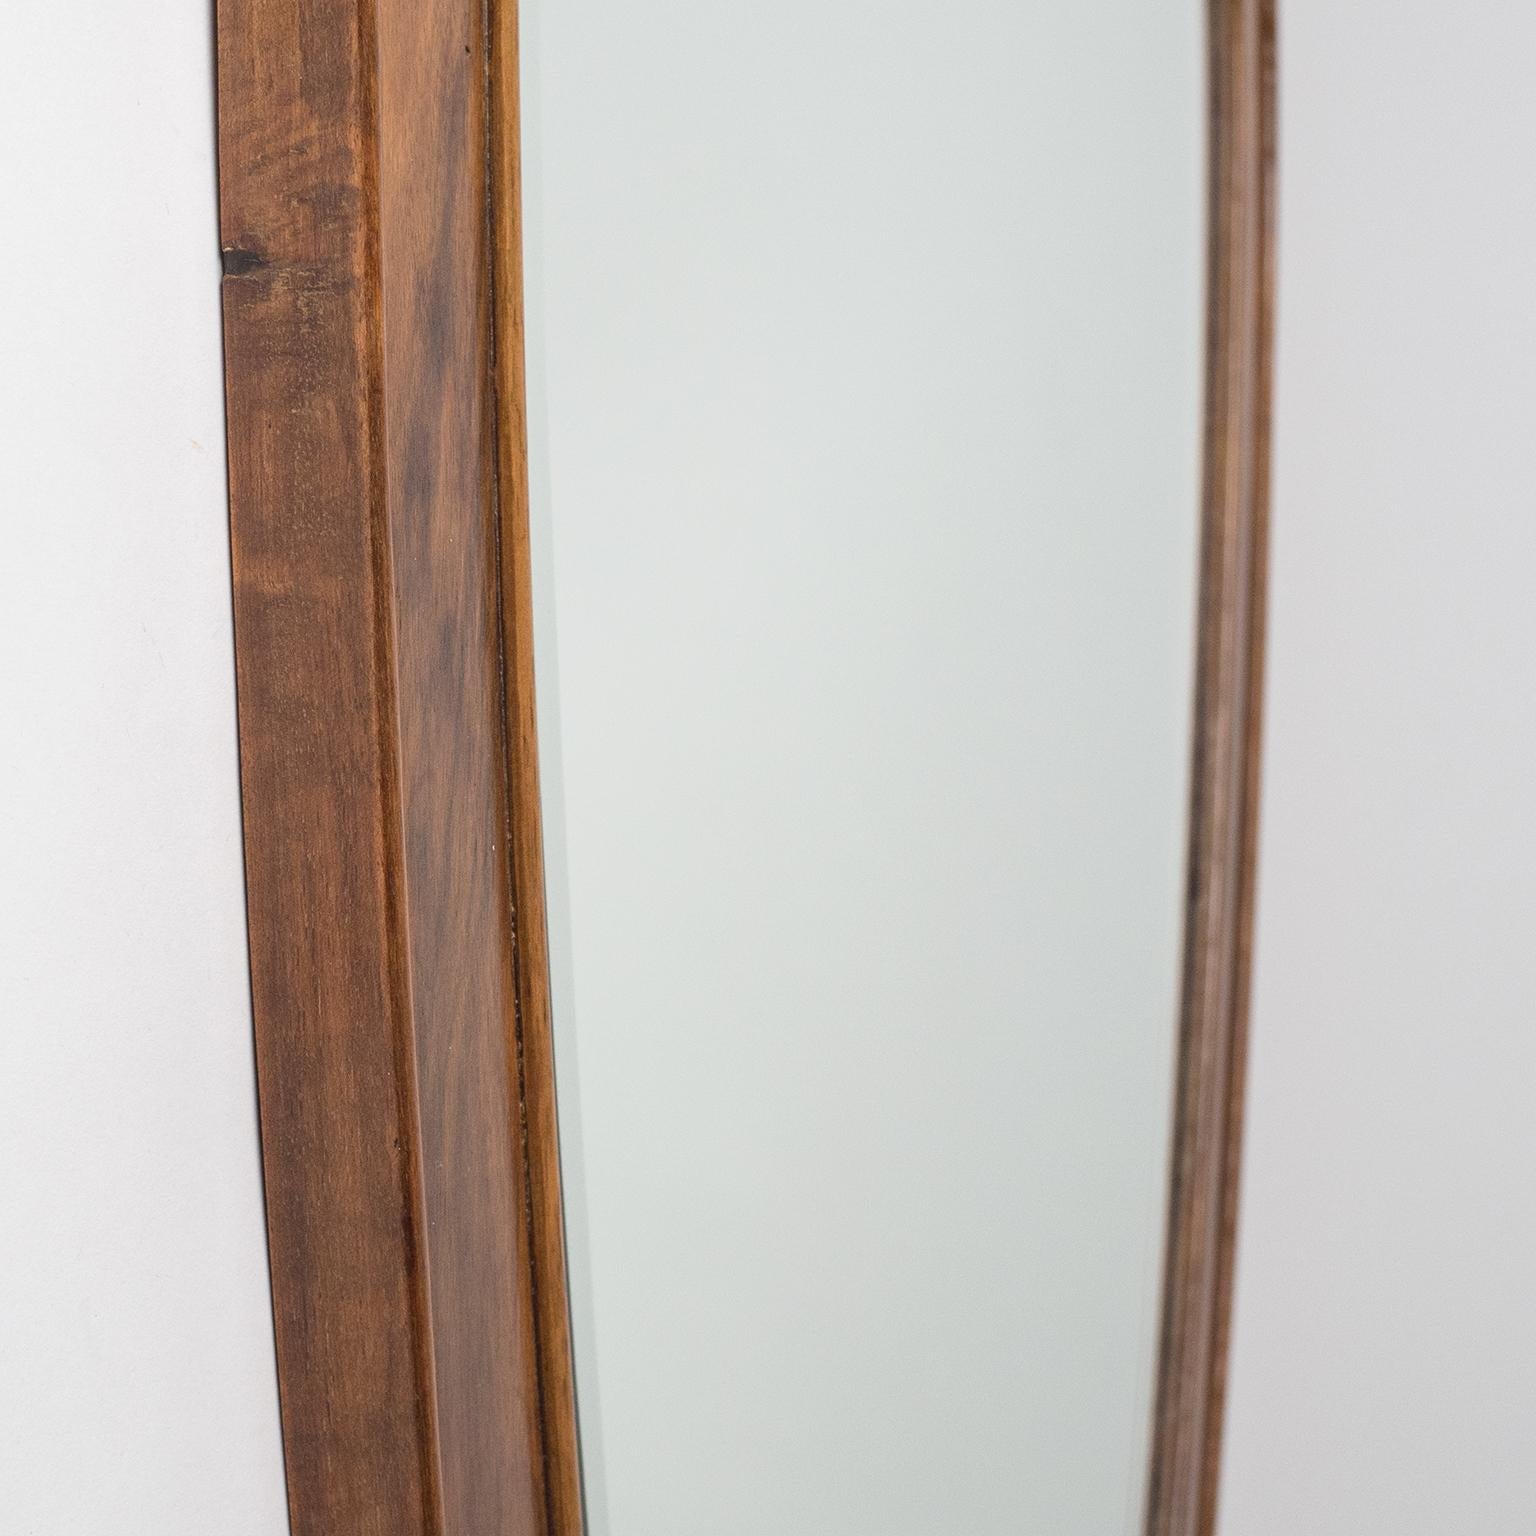 Mid-20th Century Italian Heart-Shaped Mirror, circa 1940, Walnut Frame